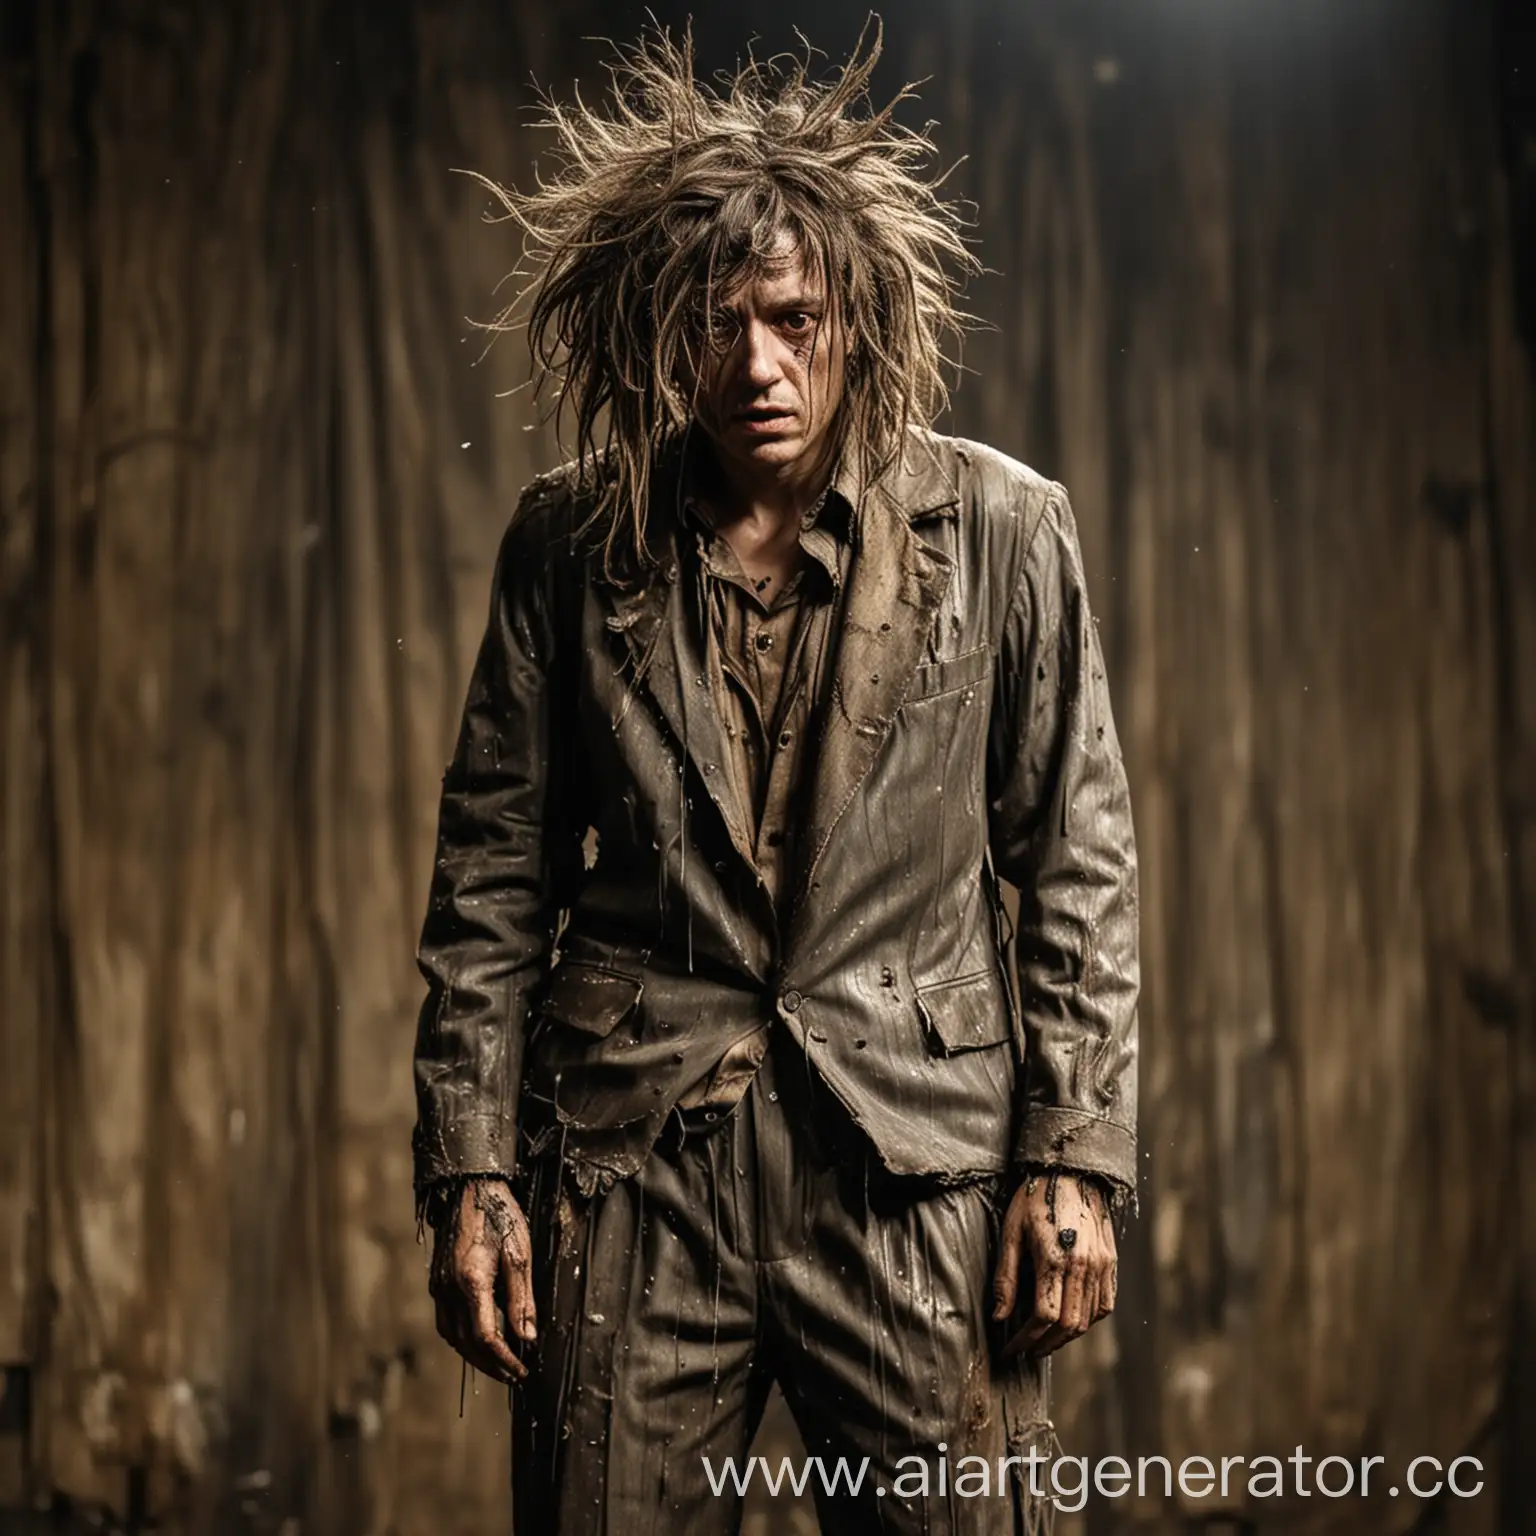 депресивный персонаж на сцене одет в неопрятный, грязный, мятый костюм, а волосы растрепанны